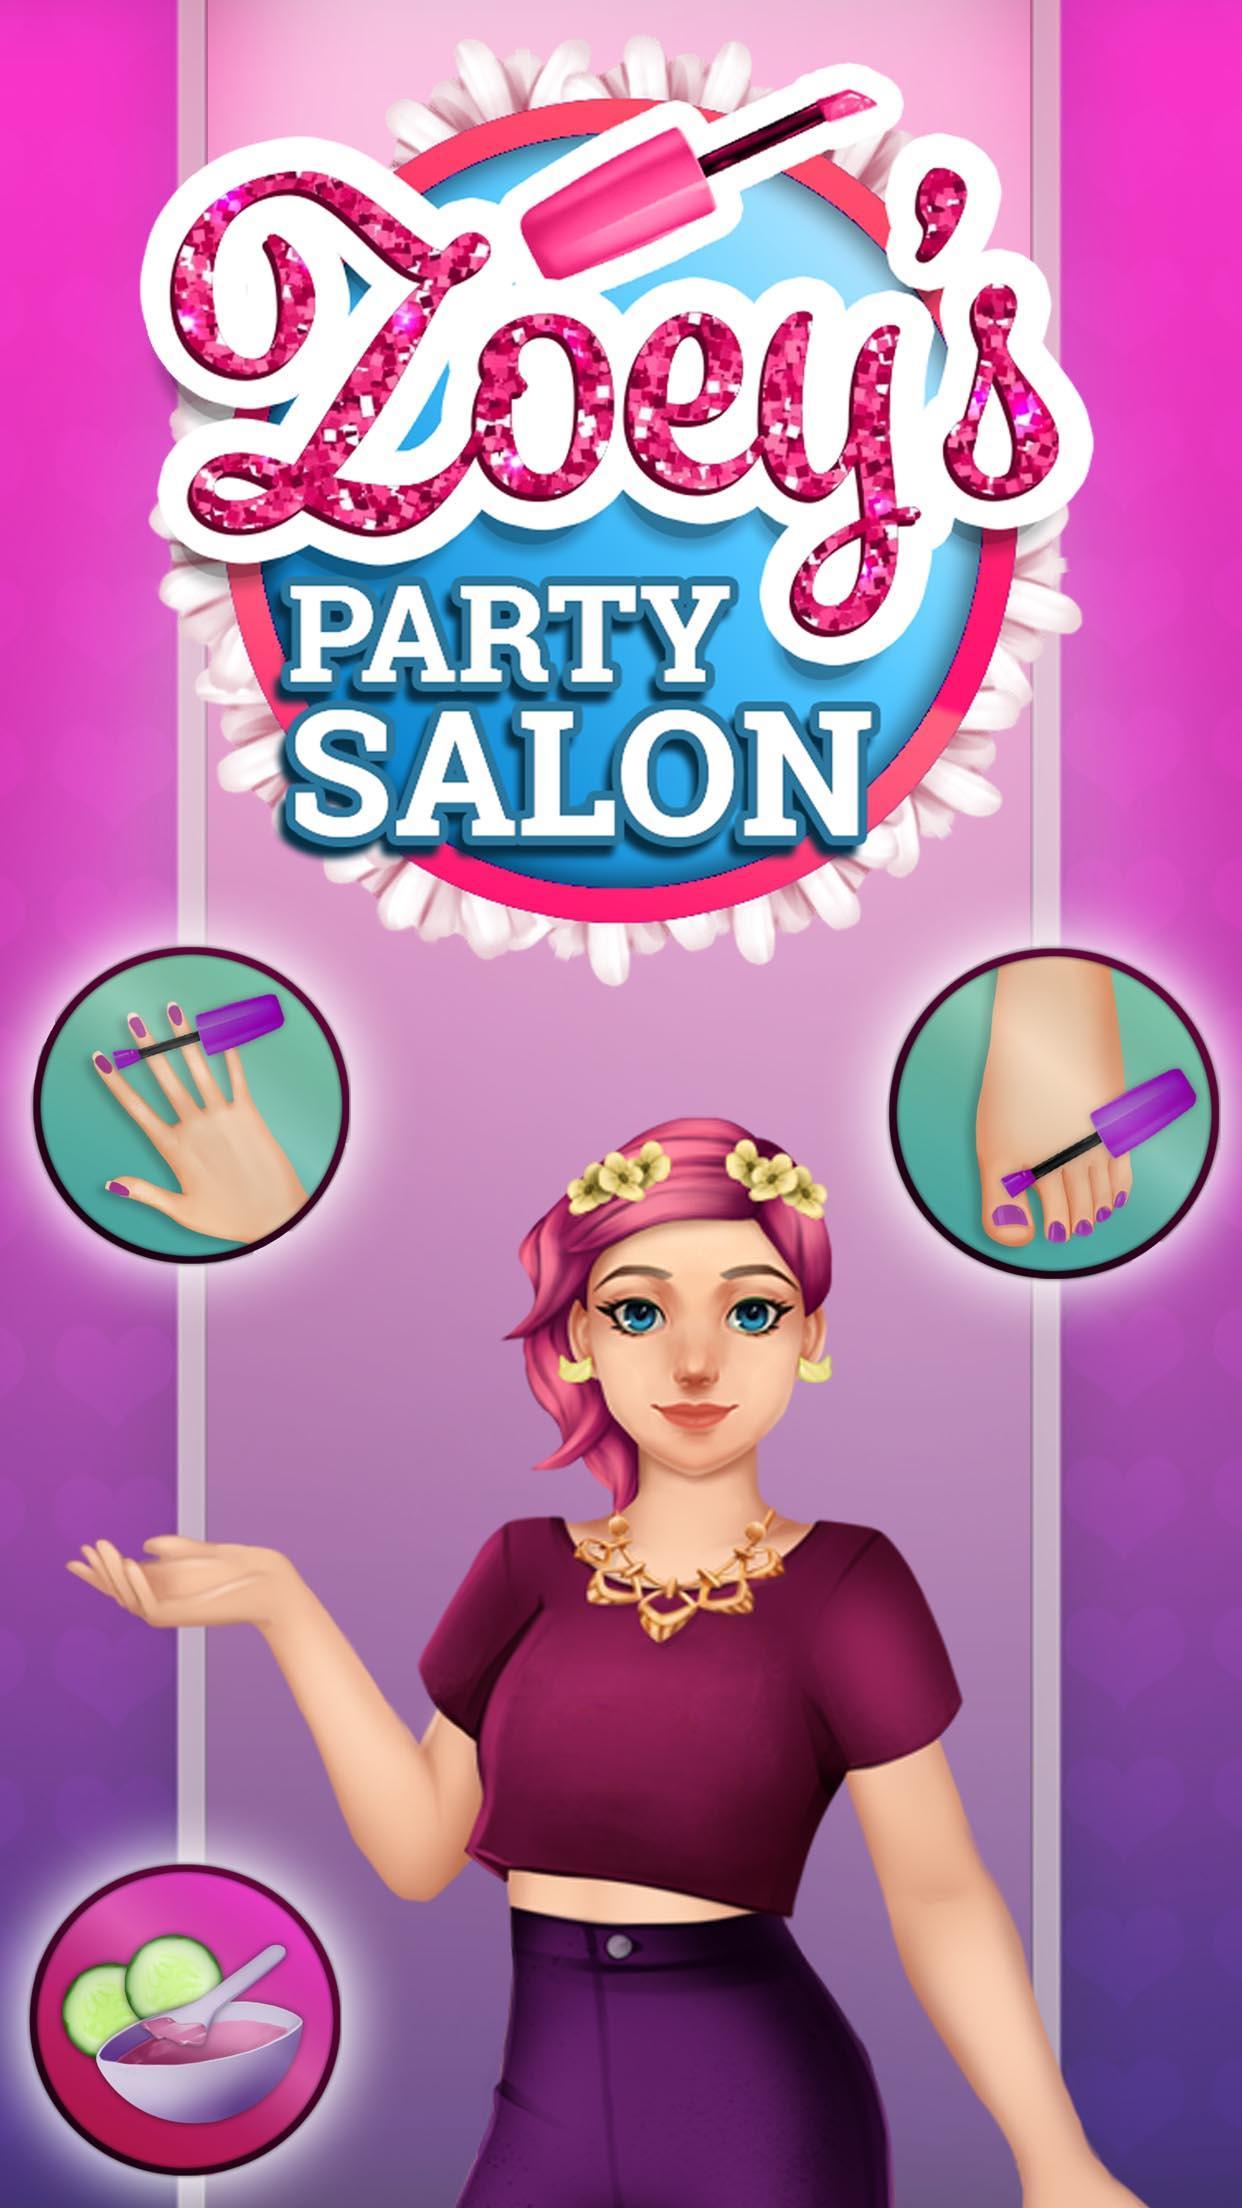 Screenshot 1 of Zoey's Party Salon - ក្រចក តុបតែងមុខ ស្ប៉ា និងស្លៀកពាក់ 1.0.23